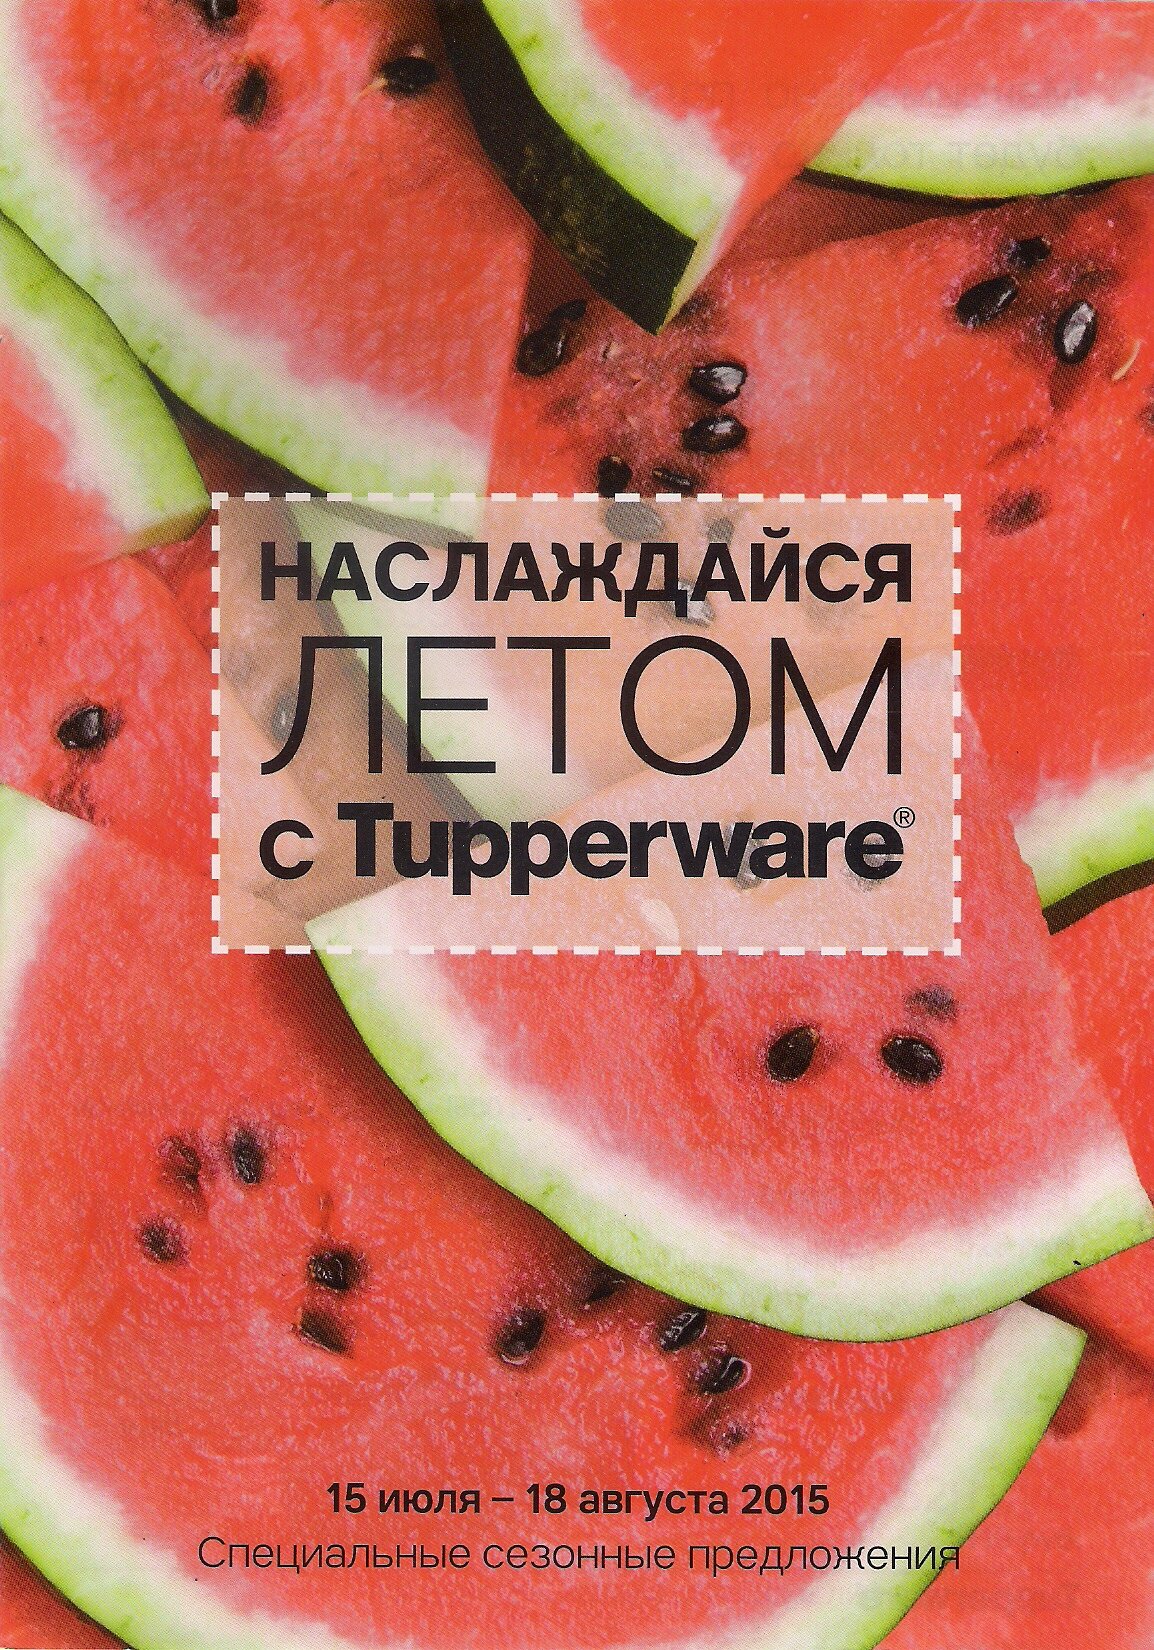 http://tupper4you.ru/images/upload/o5.jpg